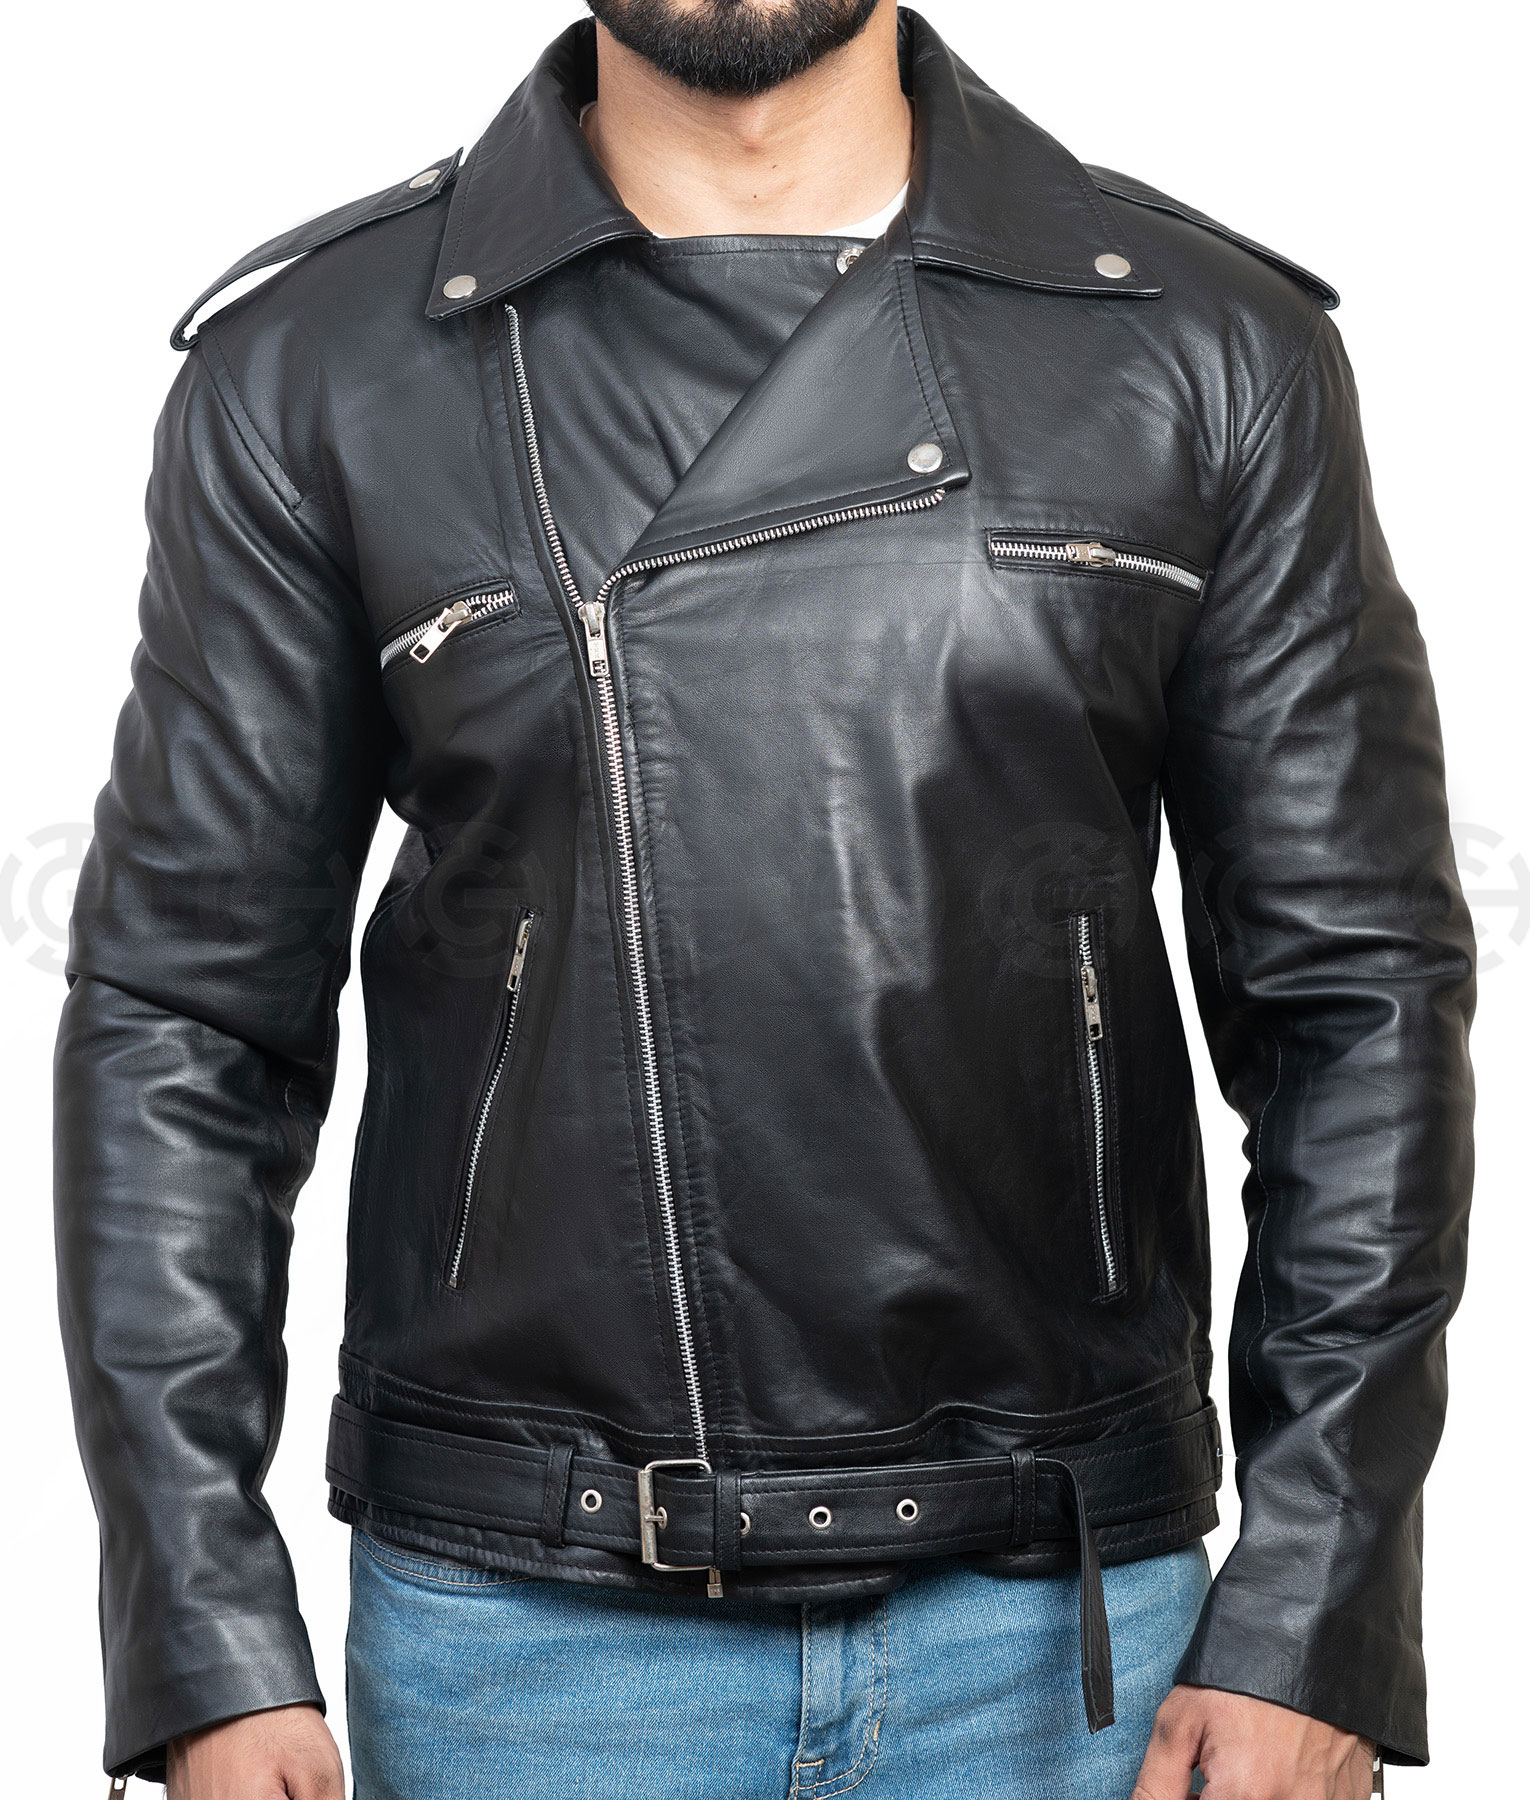 Judgment's Takayuki Yagami Black Leather Jacket